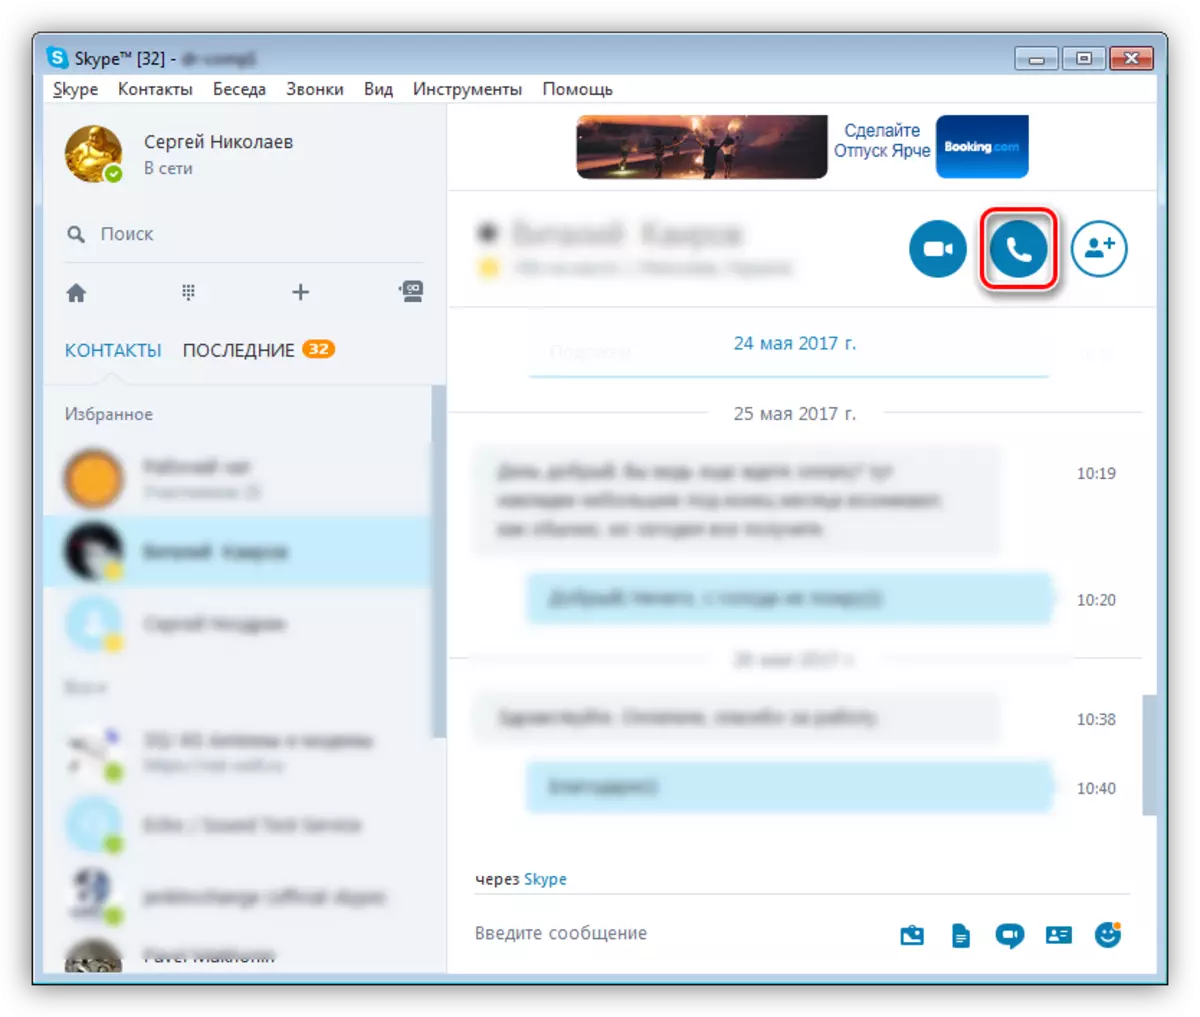 Seleccione un usuario para implementar la llamada de voz con Skype